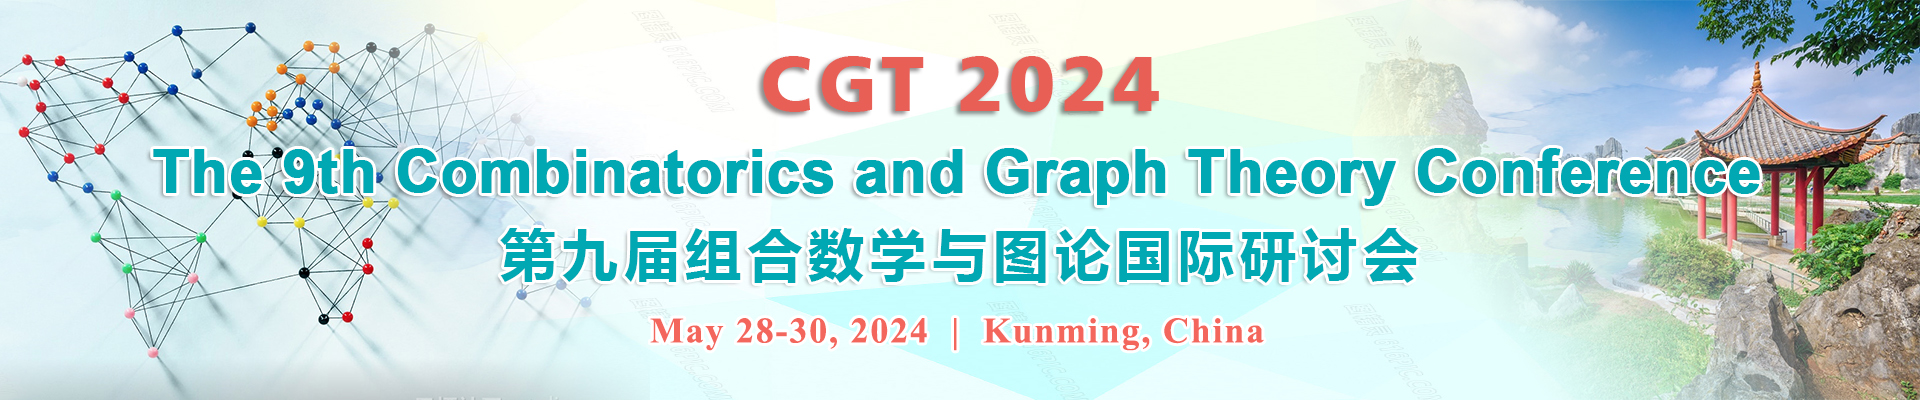 第九届组合数学与图论国际研讨会(CGT 2024)